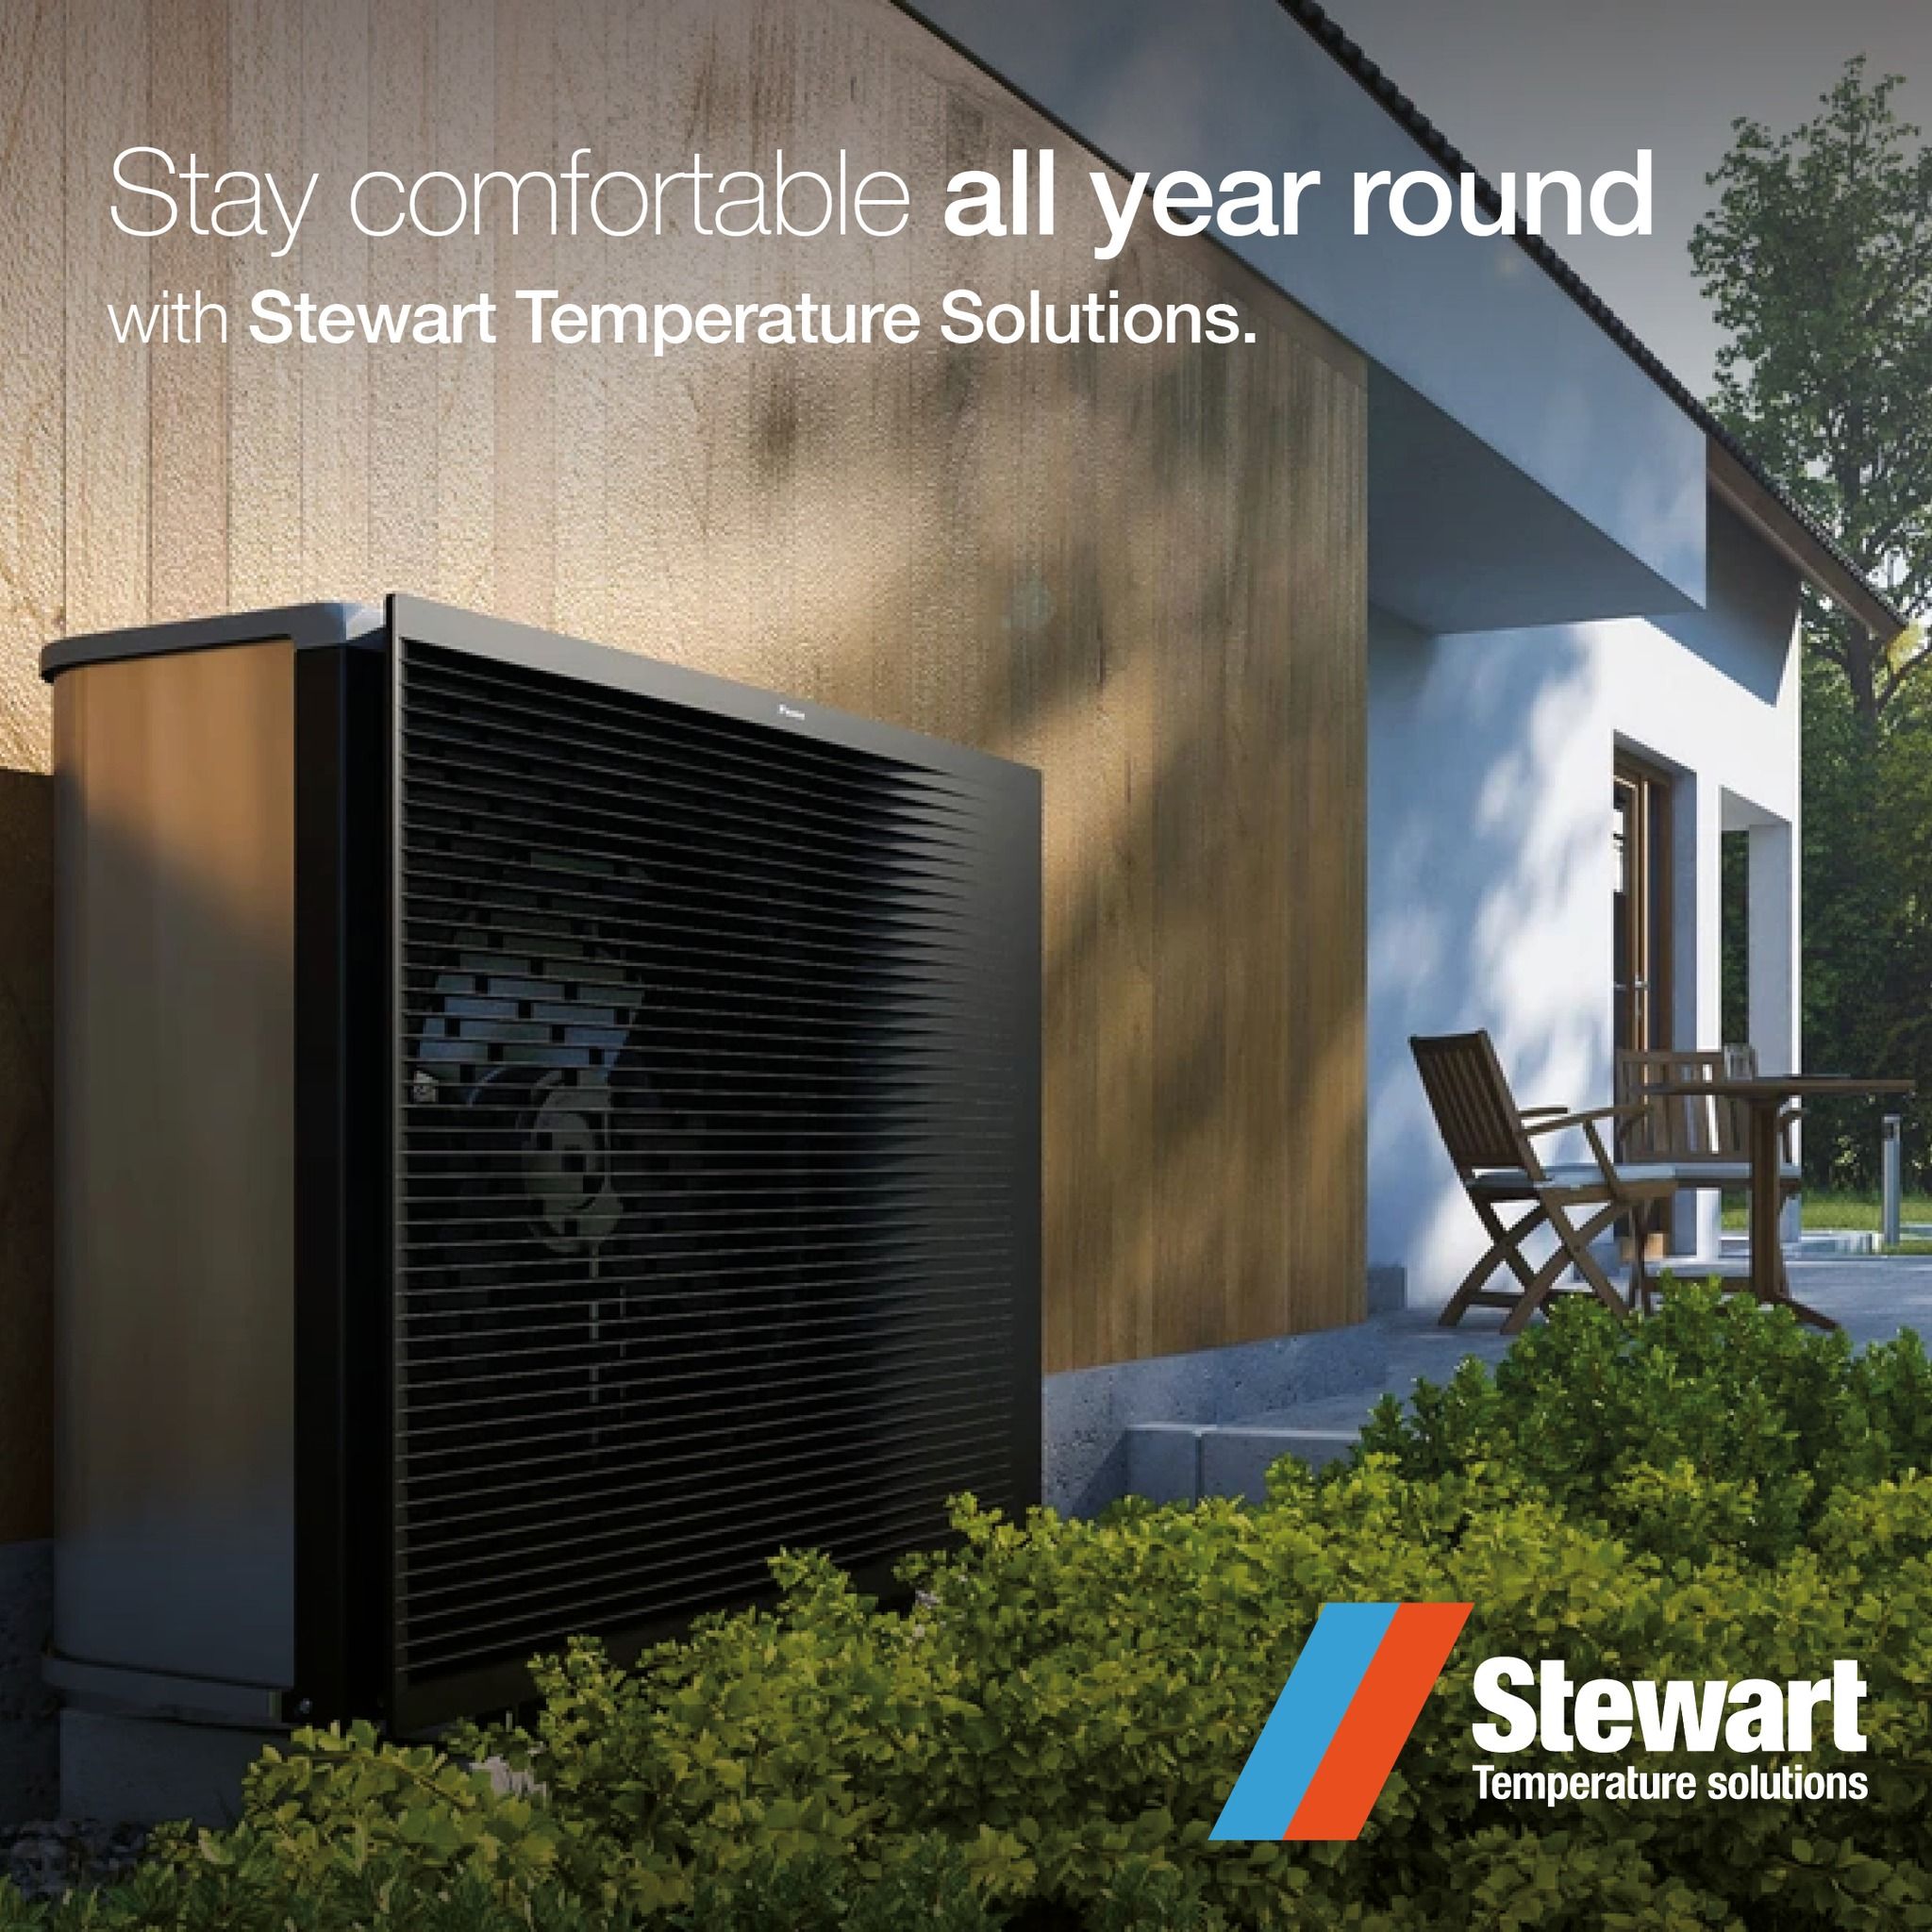 Stewart Temperature Solutions